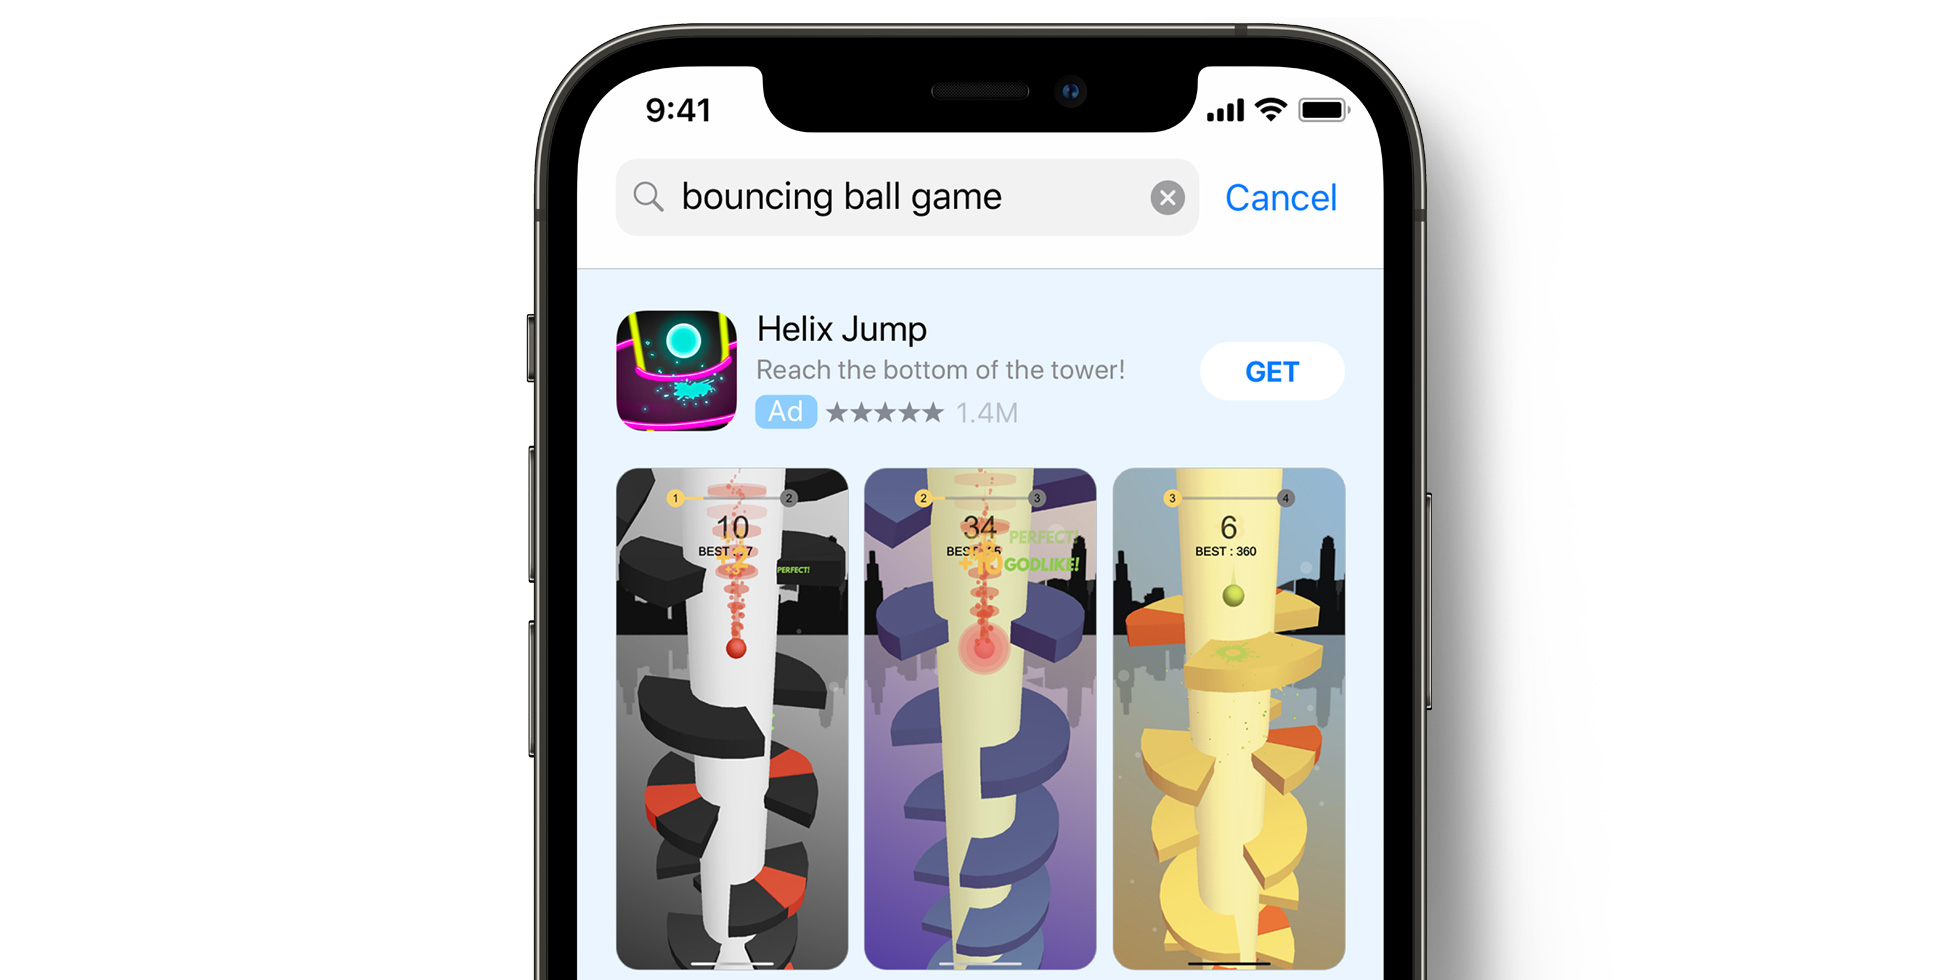 Voodoo 在 App Store 中的 Apple Search Ads 广告